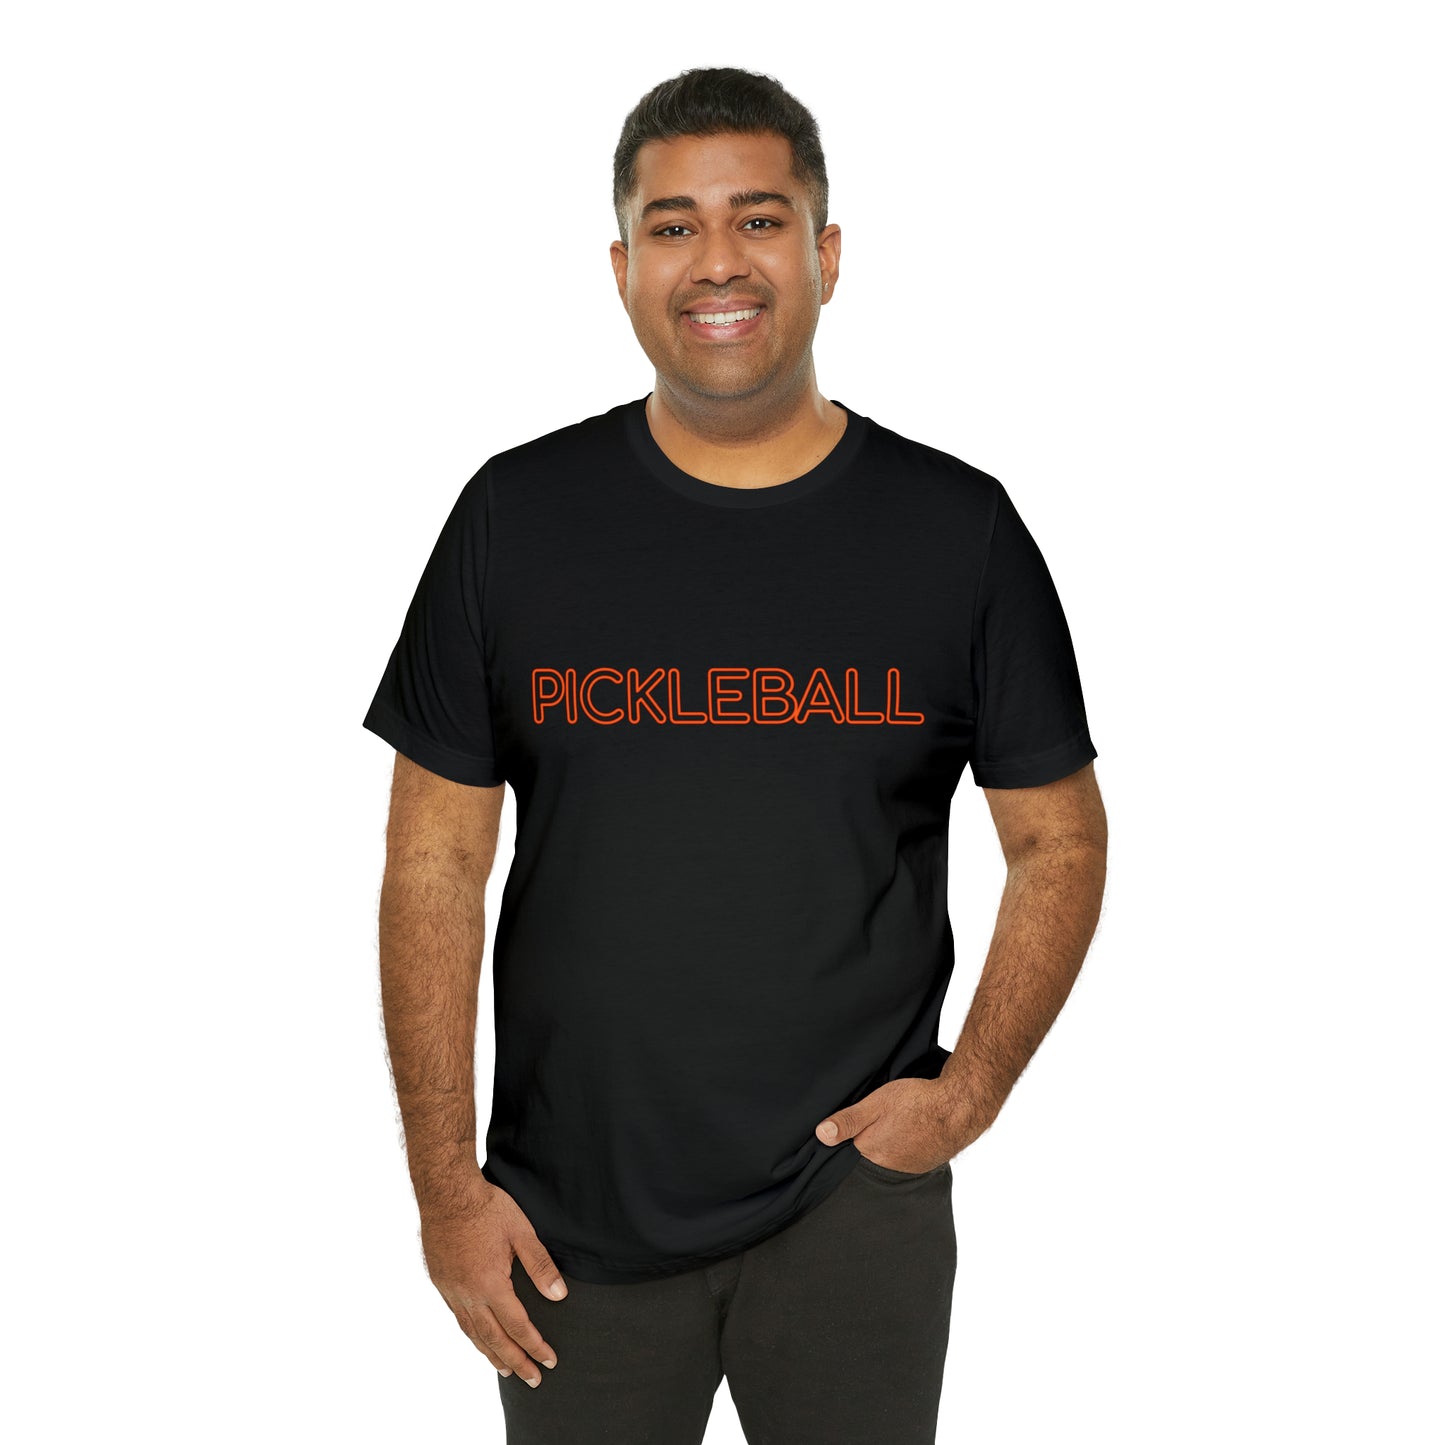 Pickleball T-Shirt for Pickleball Fans